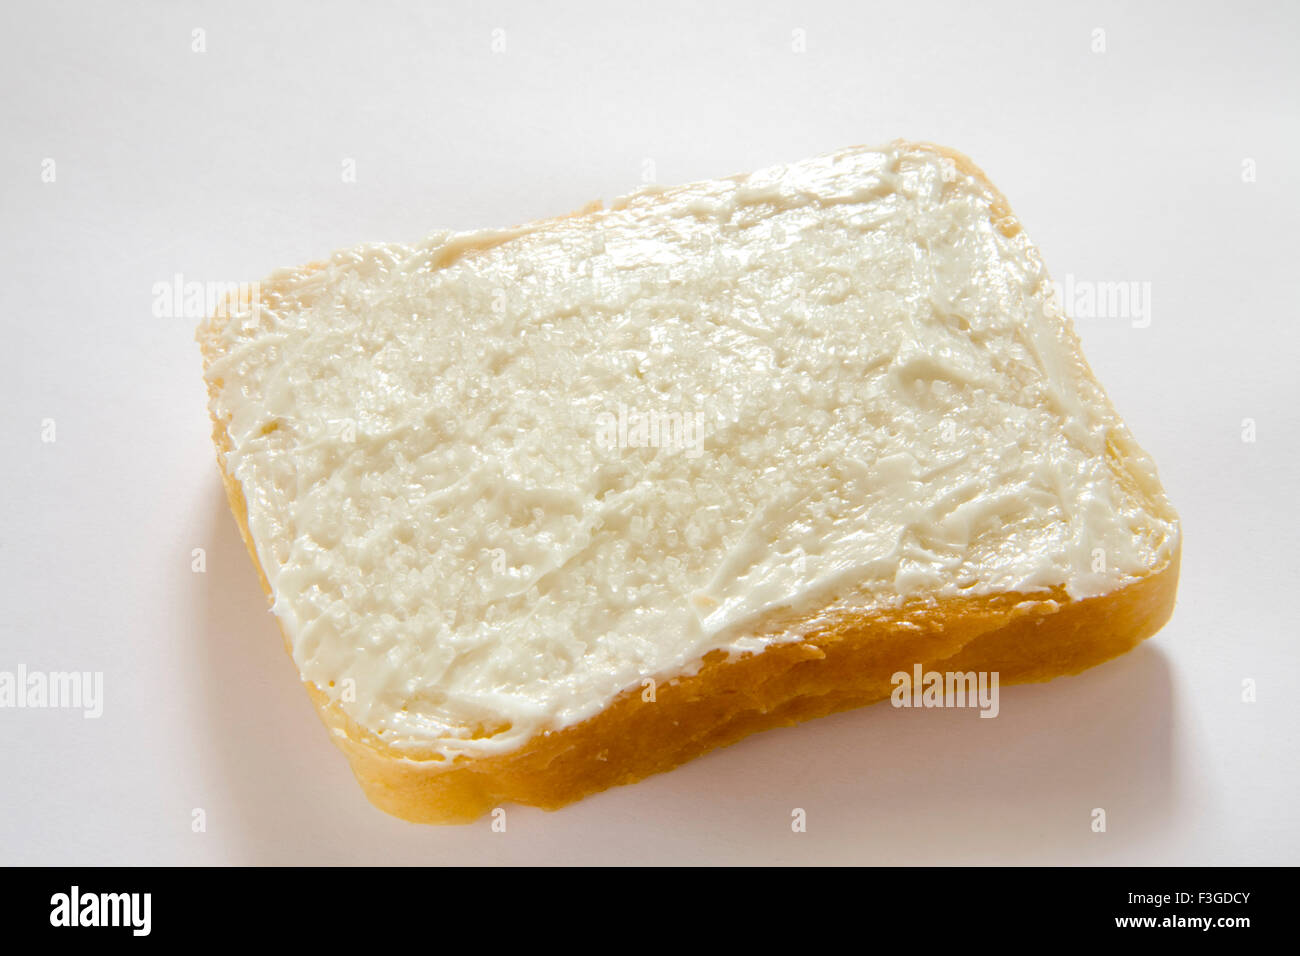 Breakfast food ; butter applied on single slice of bread Stock Photo